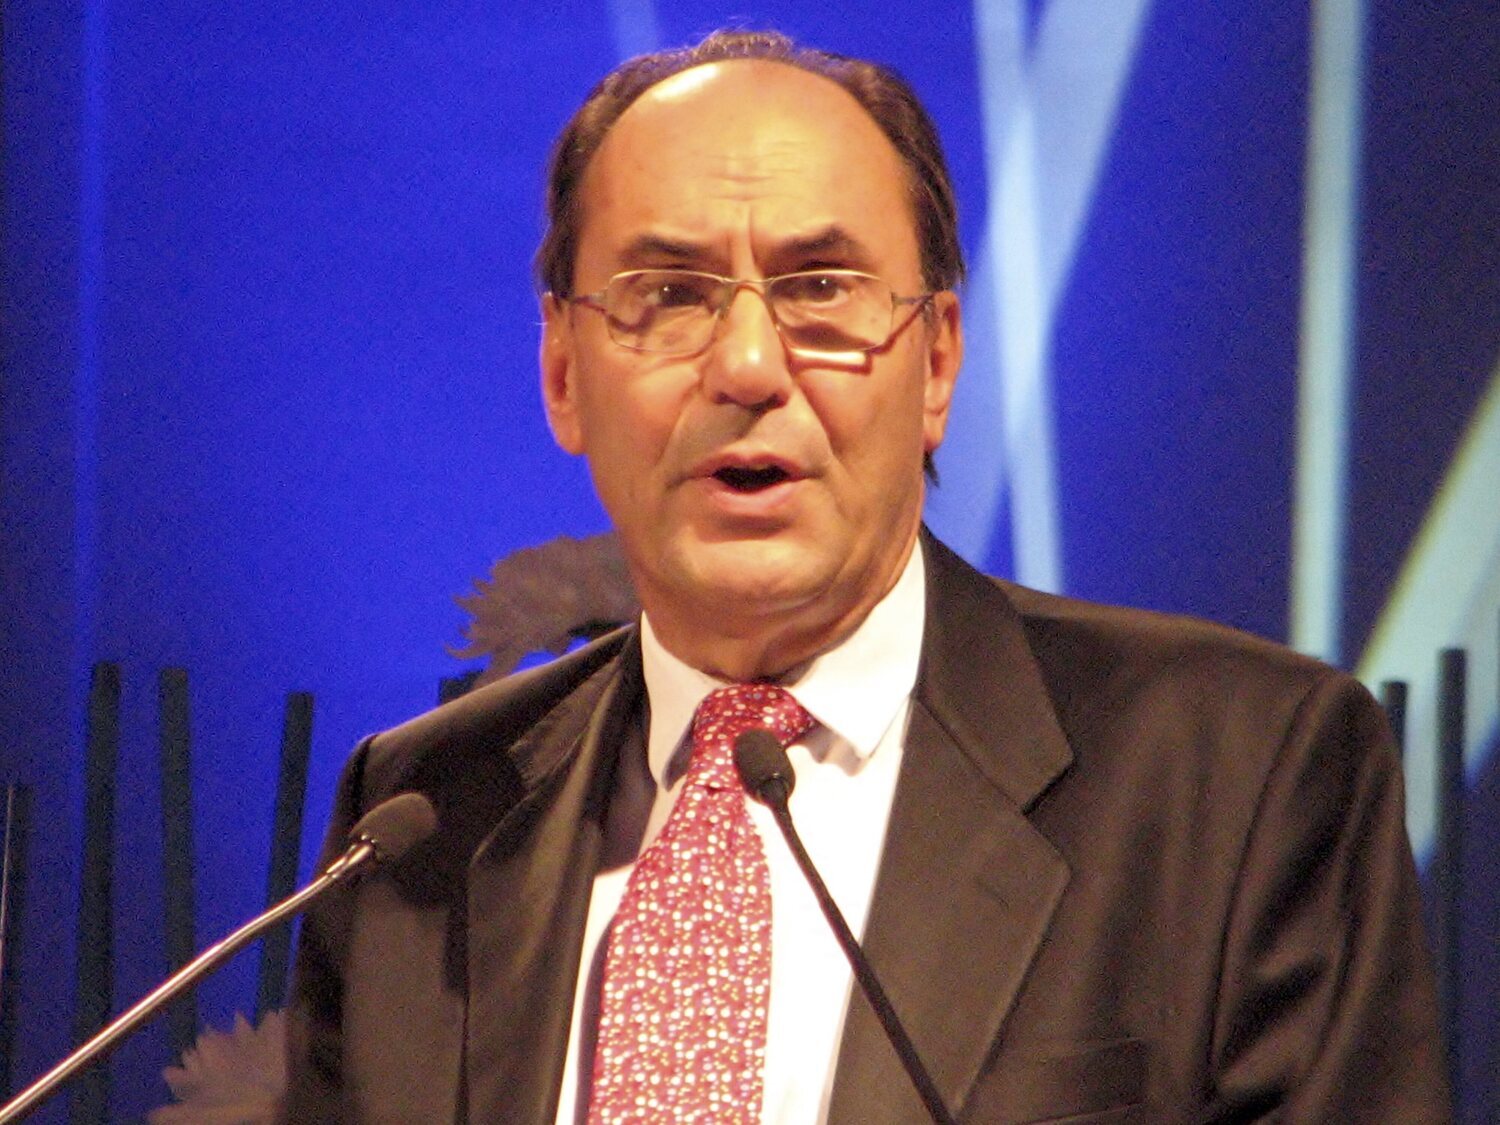 ¿Qué hay tras el intento de asesinato de Alejo Vidal-Quadras? Las hipótesis que toman mayor fuerza